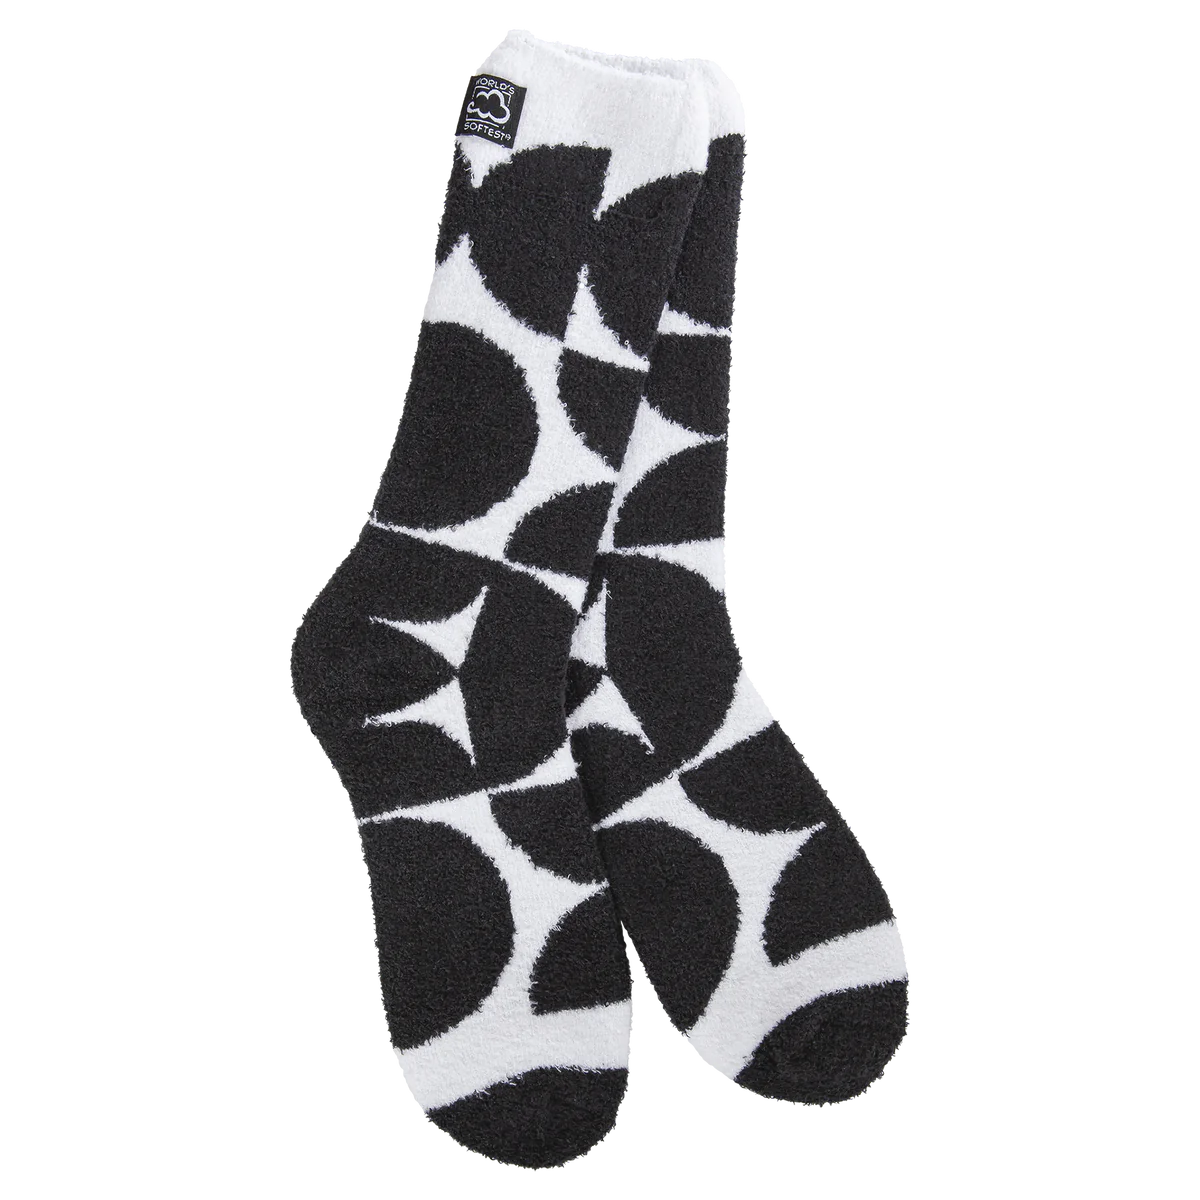 World's Softest Socks Bold Black on White Design